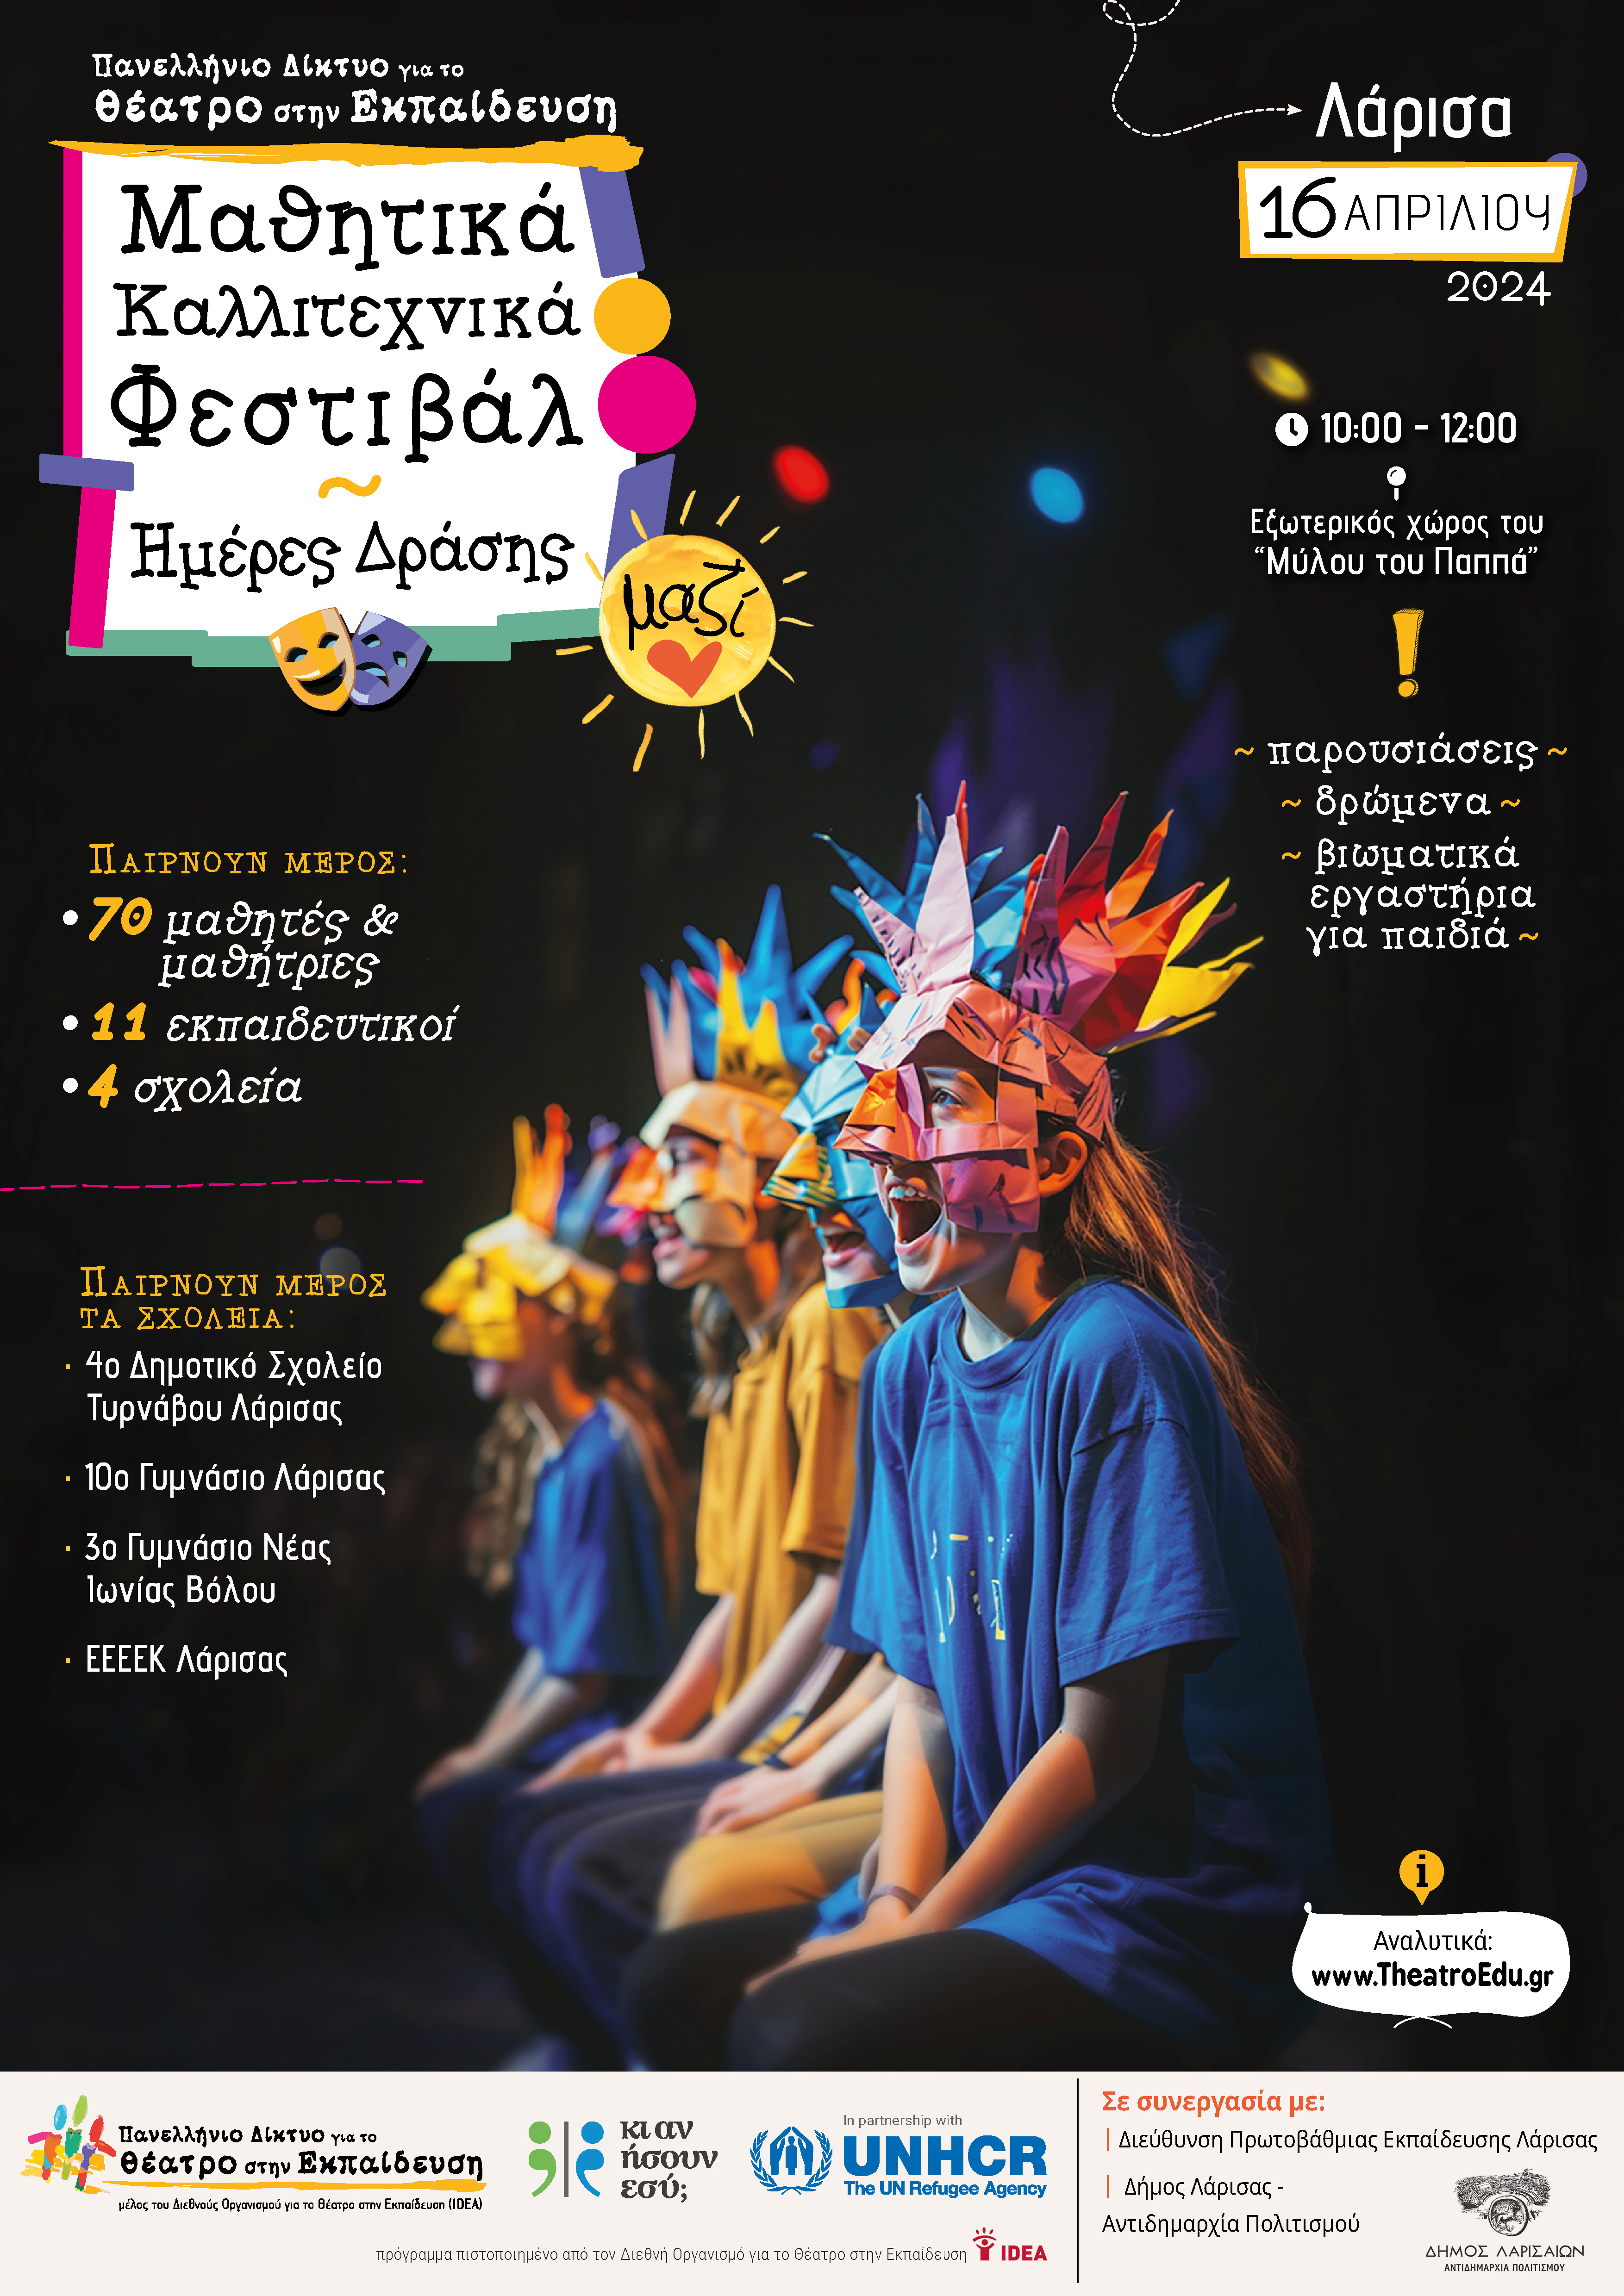 Μαθητικό Καλλιτεχνικό Φεστιβάλ - Ημέρα δράσης 2024 στη Λάρισα "Μαζί"